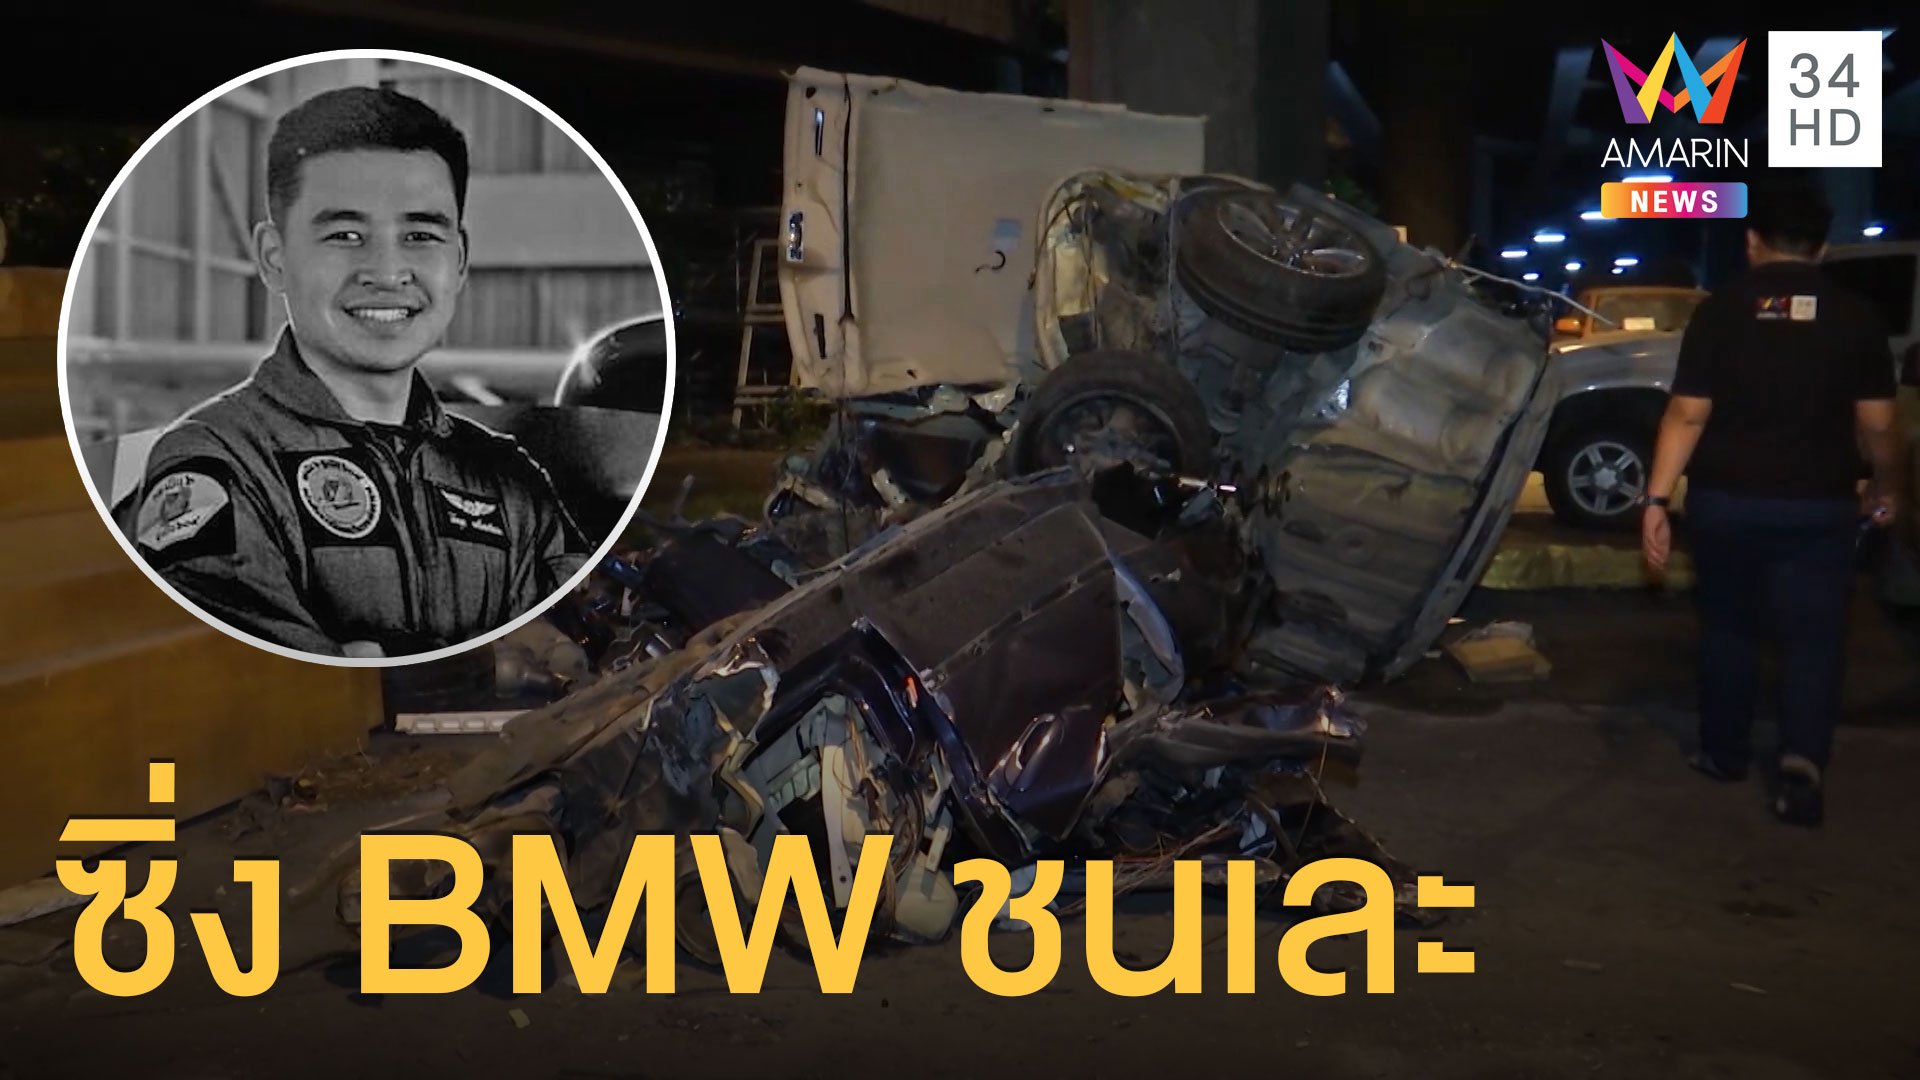   ช่างเครื่องบินควบ BMW หลุดโค้งขาดสองท่อน | ข่าวอรุณอมรินทร์ | 23 ก.ย. 63 | AMARIN TVHD34